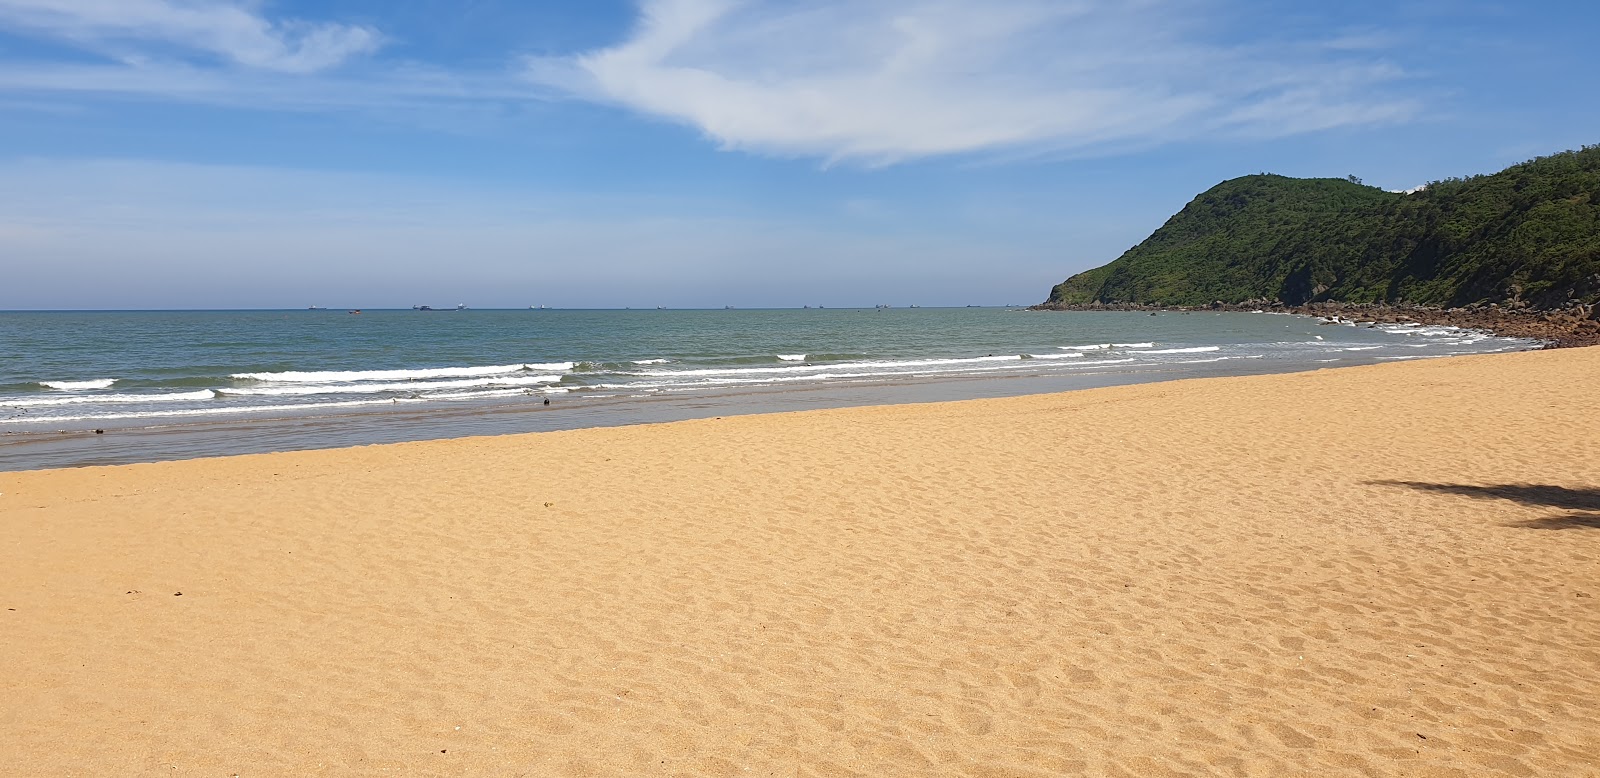 Zdjęcie Bai Dong Beach z powierzchnią jasny, drobny piasek